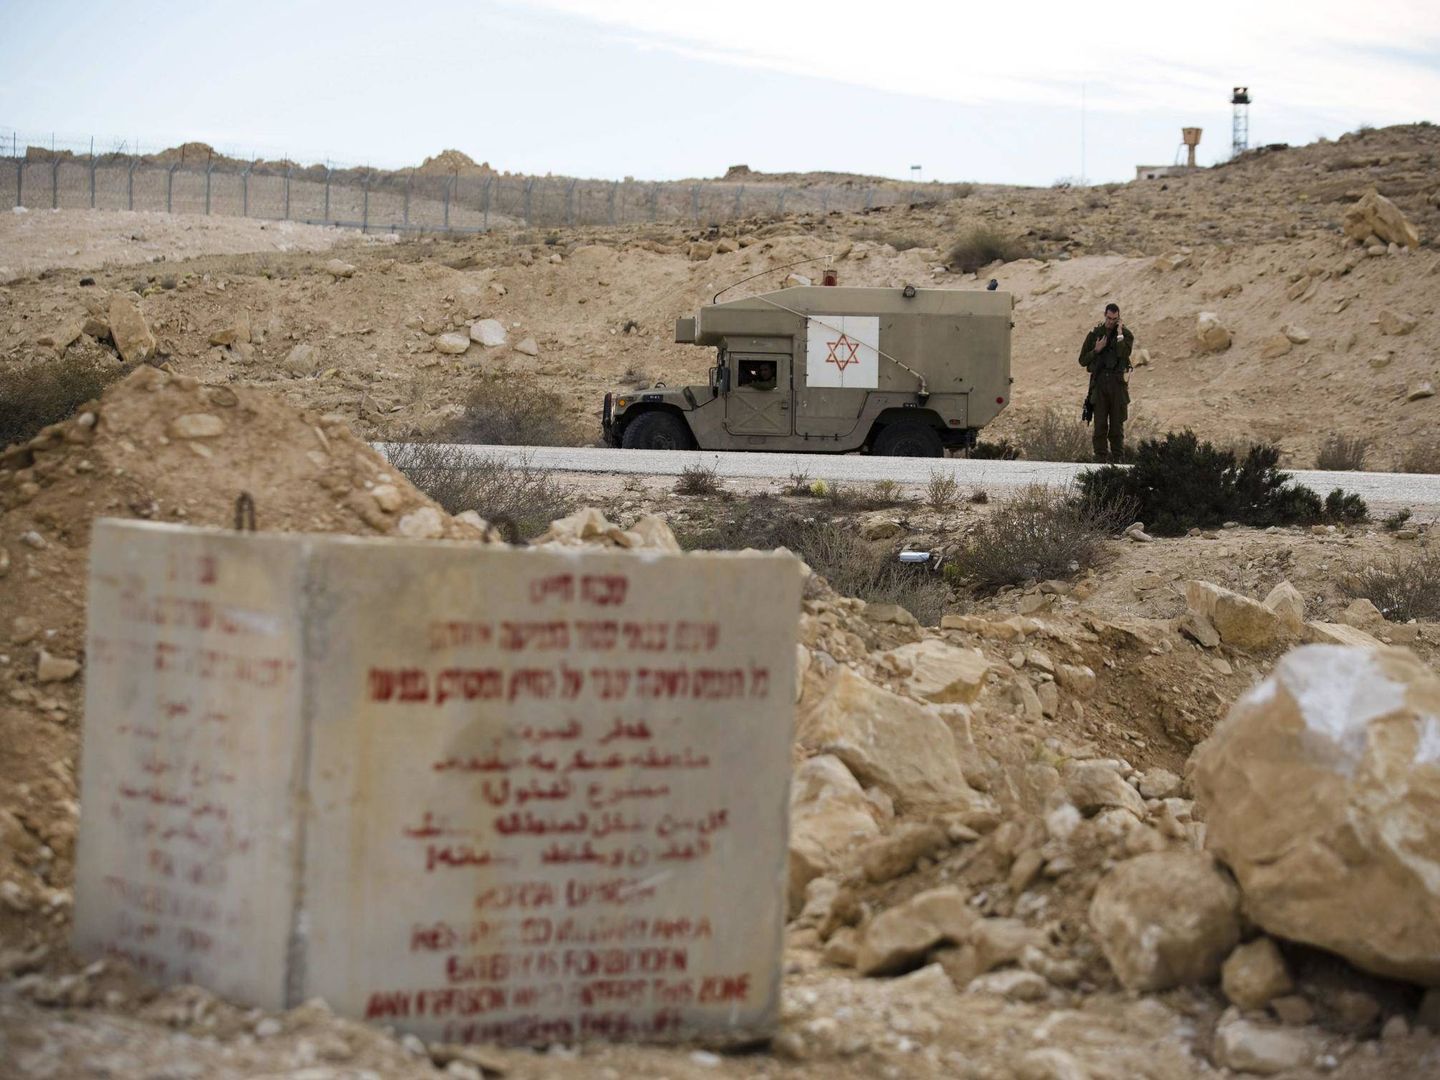 Un soldado israelí habla por teléfono junto a una ambulancia militar tras un ataque desde el lado egipcio de la frontera, en octubre de 2014 (Reuters)